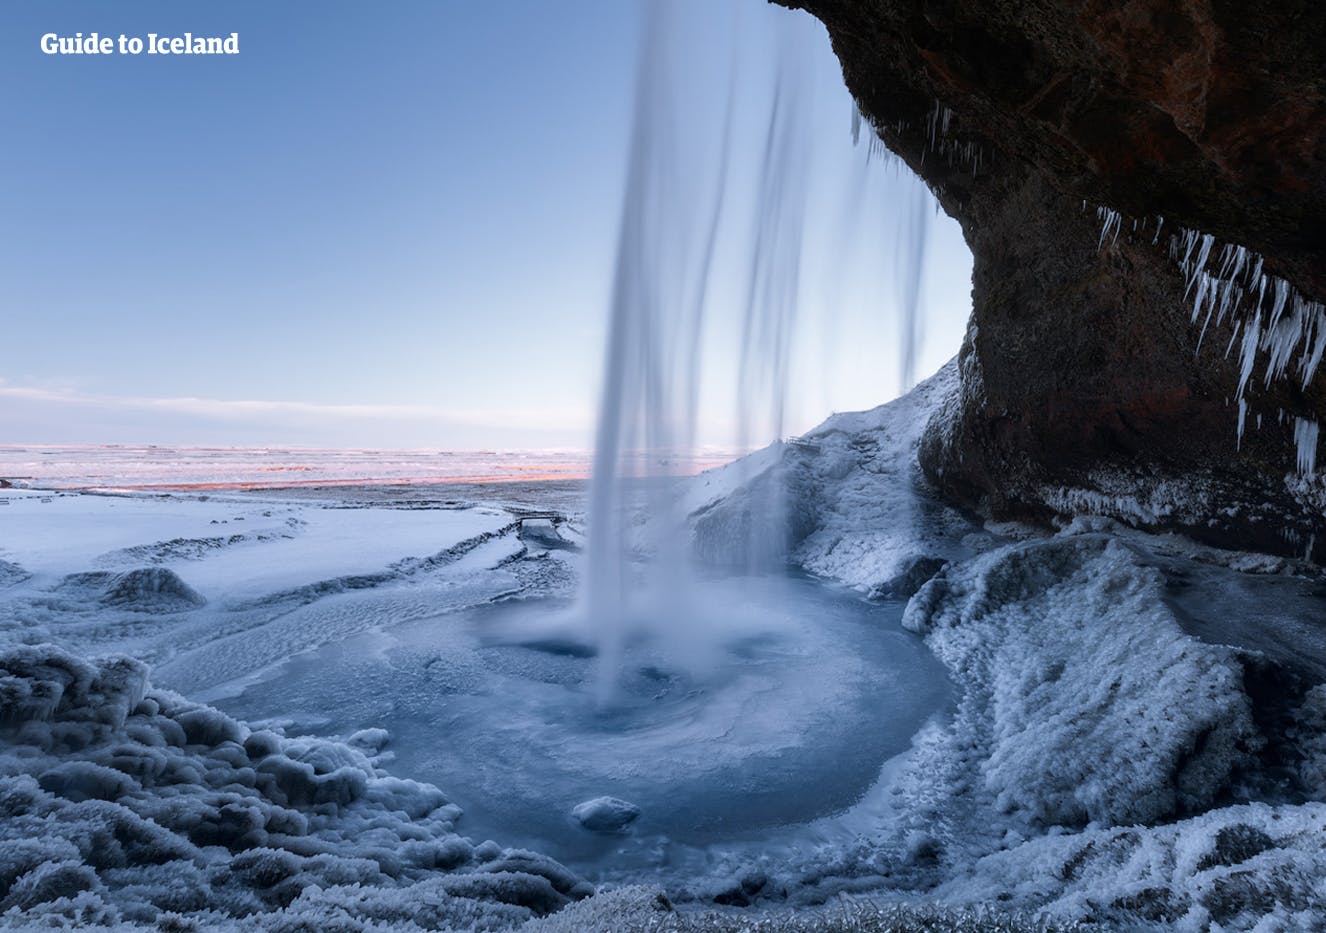 Den frostiga utsikten bakom vattenfallet Seljalandsfoss vattenkaskader på Islands sydkust.